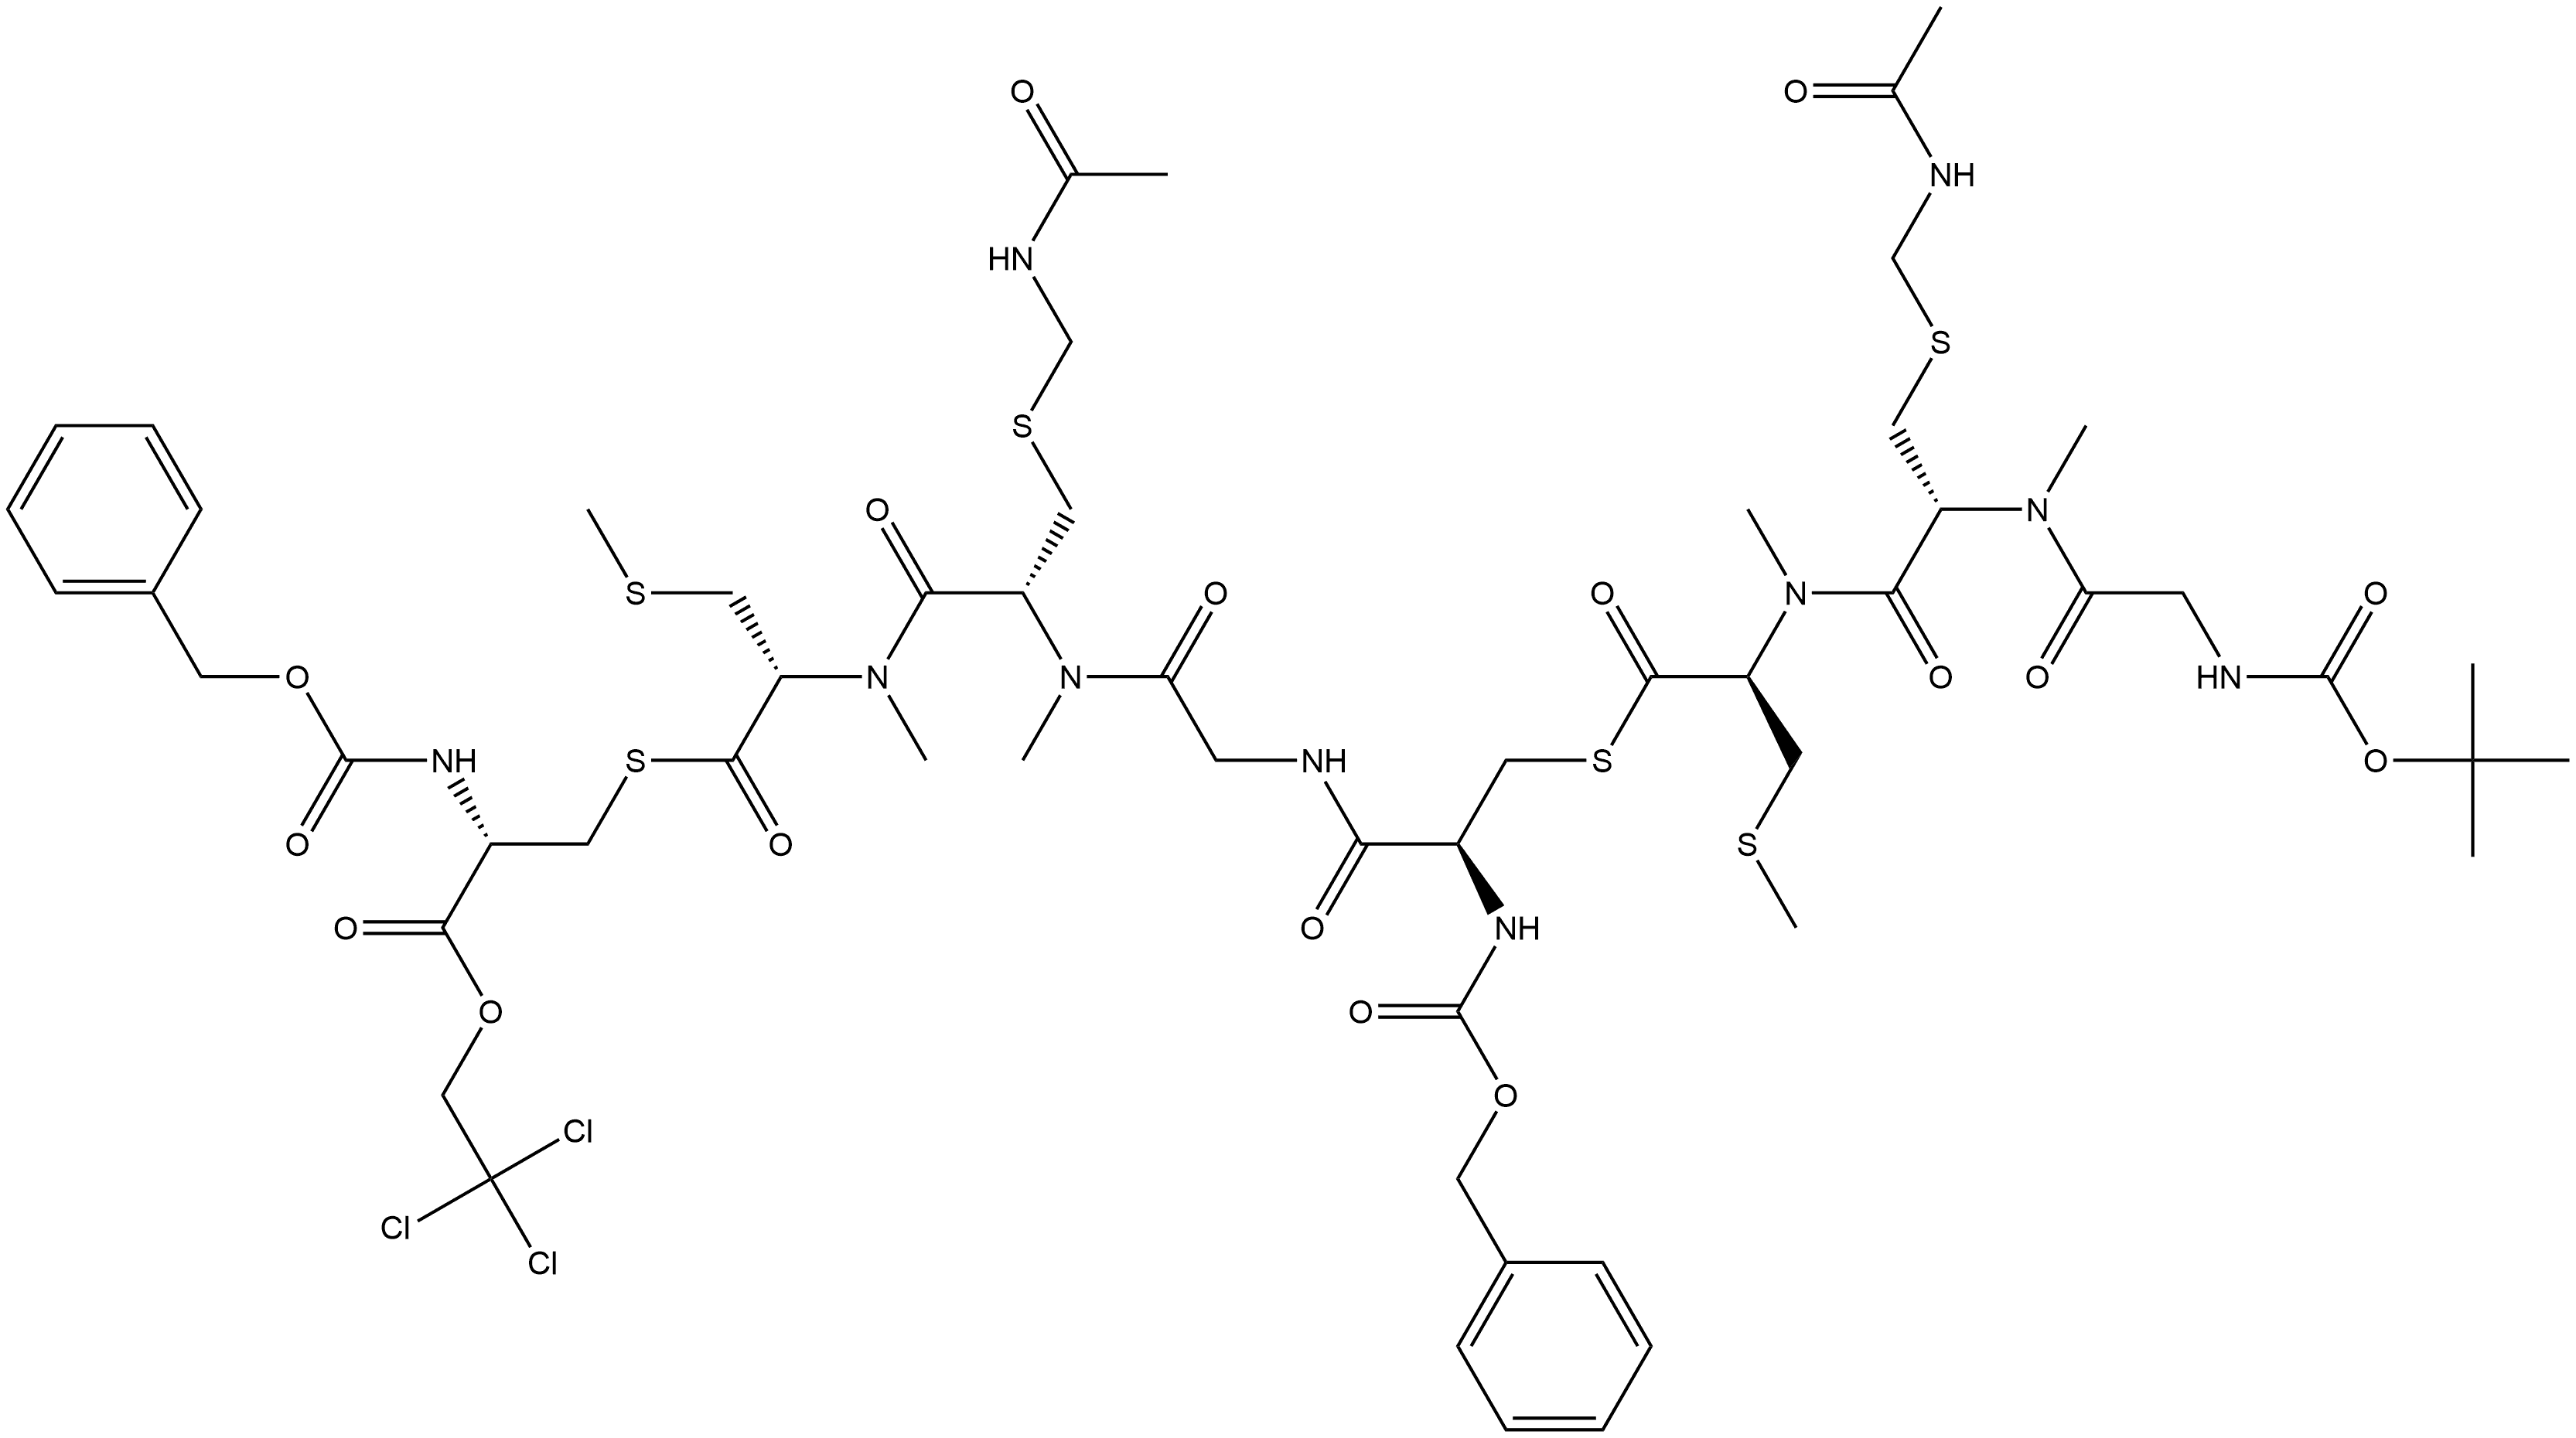 L-Cysteine, S-[N-[(1,1-dimethylethoxy)carbonyl]glycyl-S-[(acetylamino)methyl]-N-methyl-L-cysteinyl-N,S-dimethyl-L-cysteinyl]-N-[(phenylmethoxy)carbonyl]-D-cysteinylglycyl-S-[(acetylamino)methyl]-N-methyl-L-cysteinyl-N,S-dimethylthio-, S-ester with N-[(phenylmethoxy)carbonyl]-D-cysteine 2,2,2-trichloroethyl ester Struktur